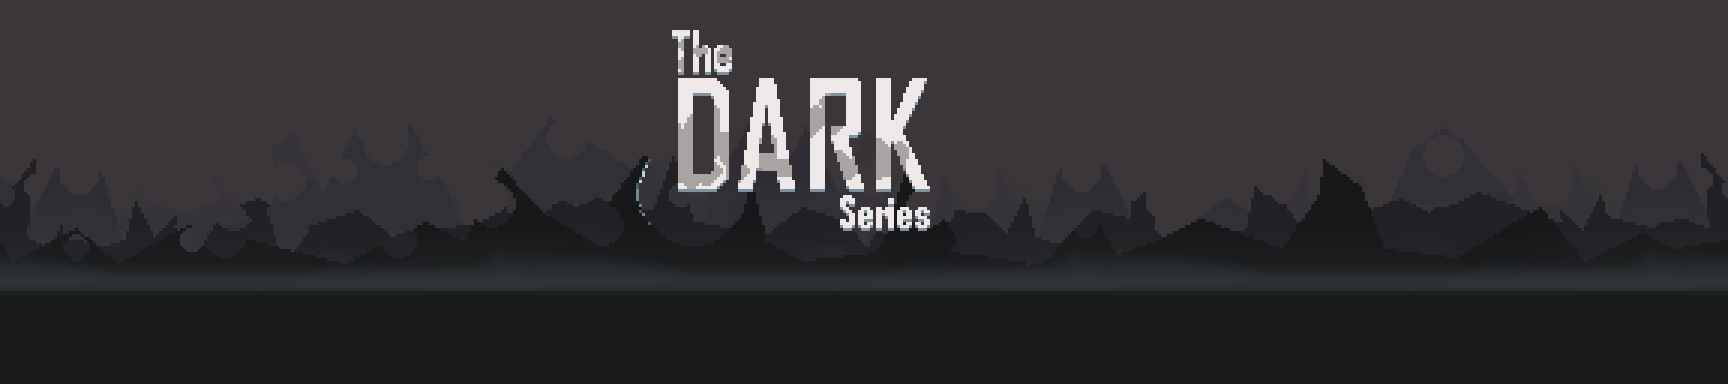 The DARK Series - Peaks Of Lightning